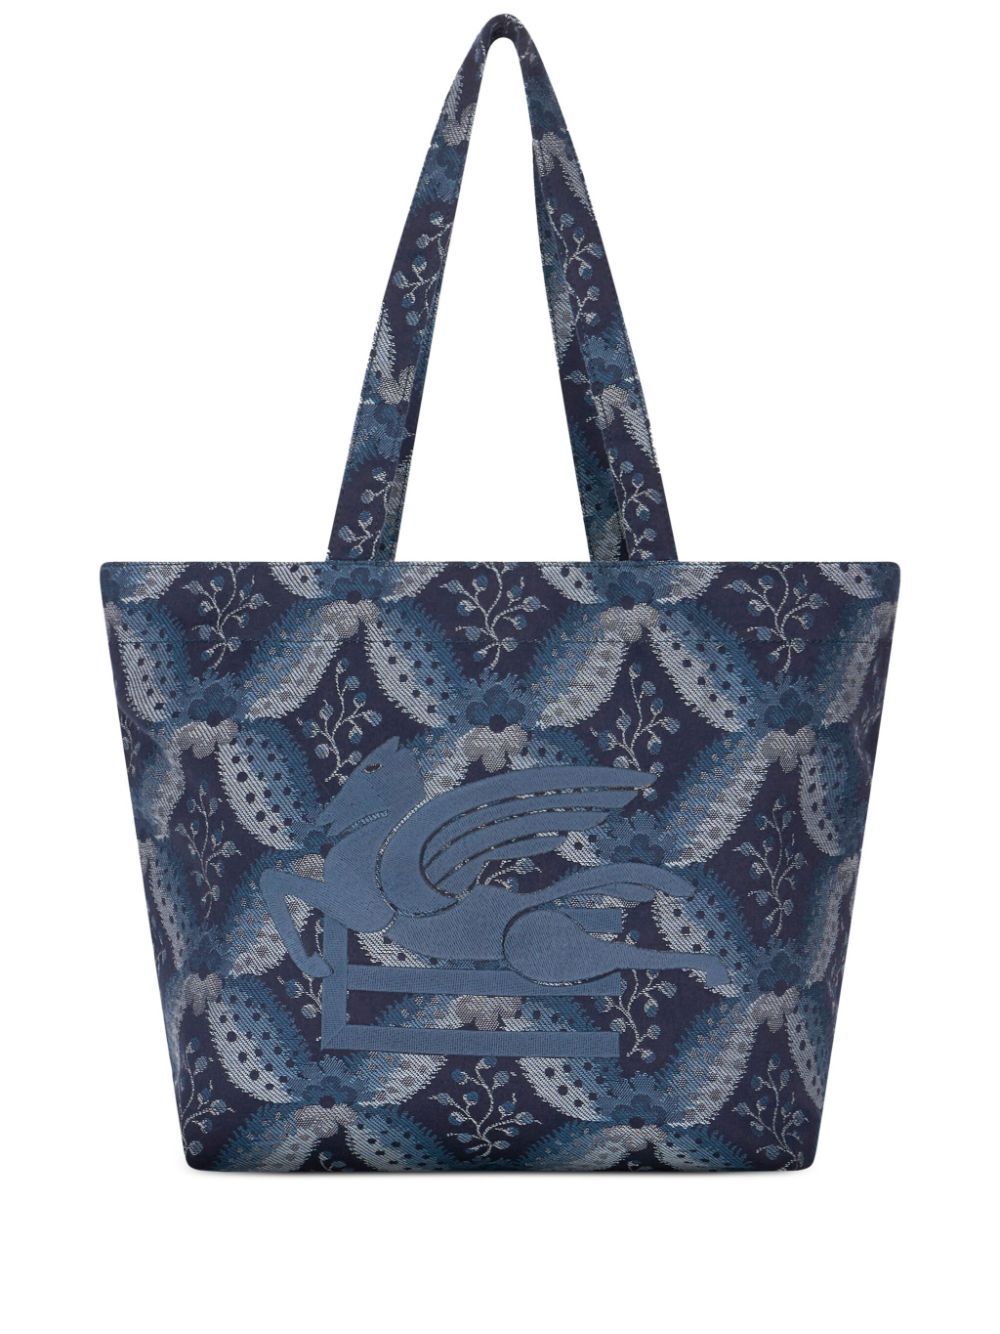 ETRO medium Floralia-print tote bag - Blue